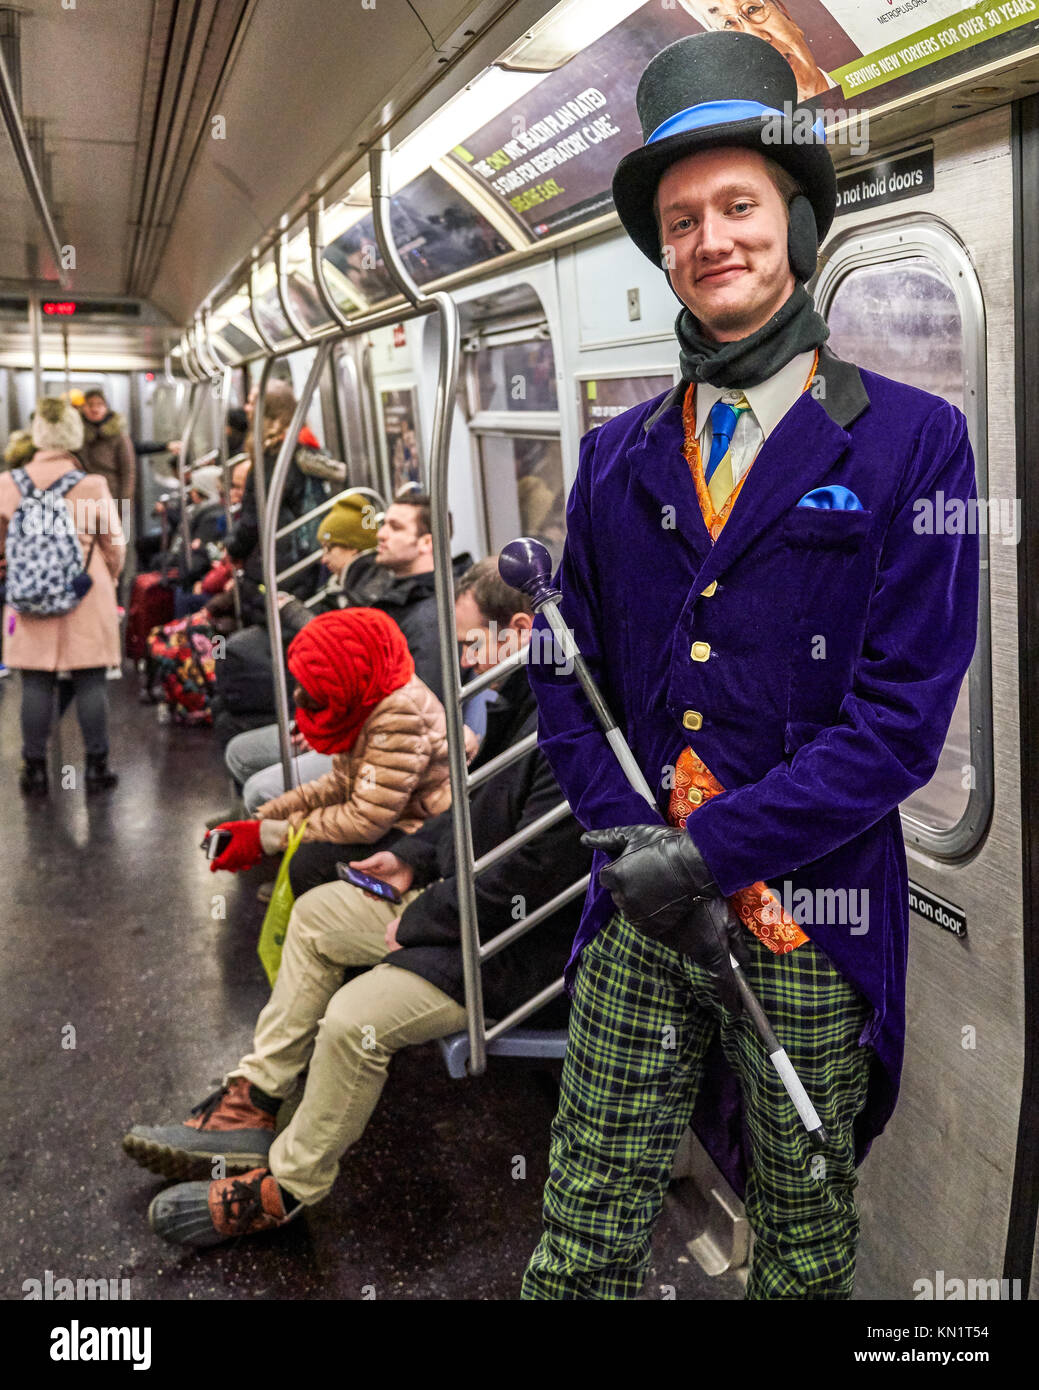 New York, Stati Uniti d'America, 9 Dic 2017. Un Willy Wonka impersonator rides metropolitana di New York per il suo modo di una promozione del musical "Charlie e la Fabbrica di Cioccolato di '. Foto di Enrique Shore/Alamy News Service Foto Stock